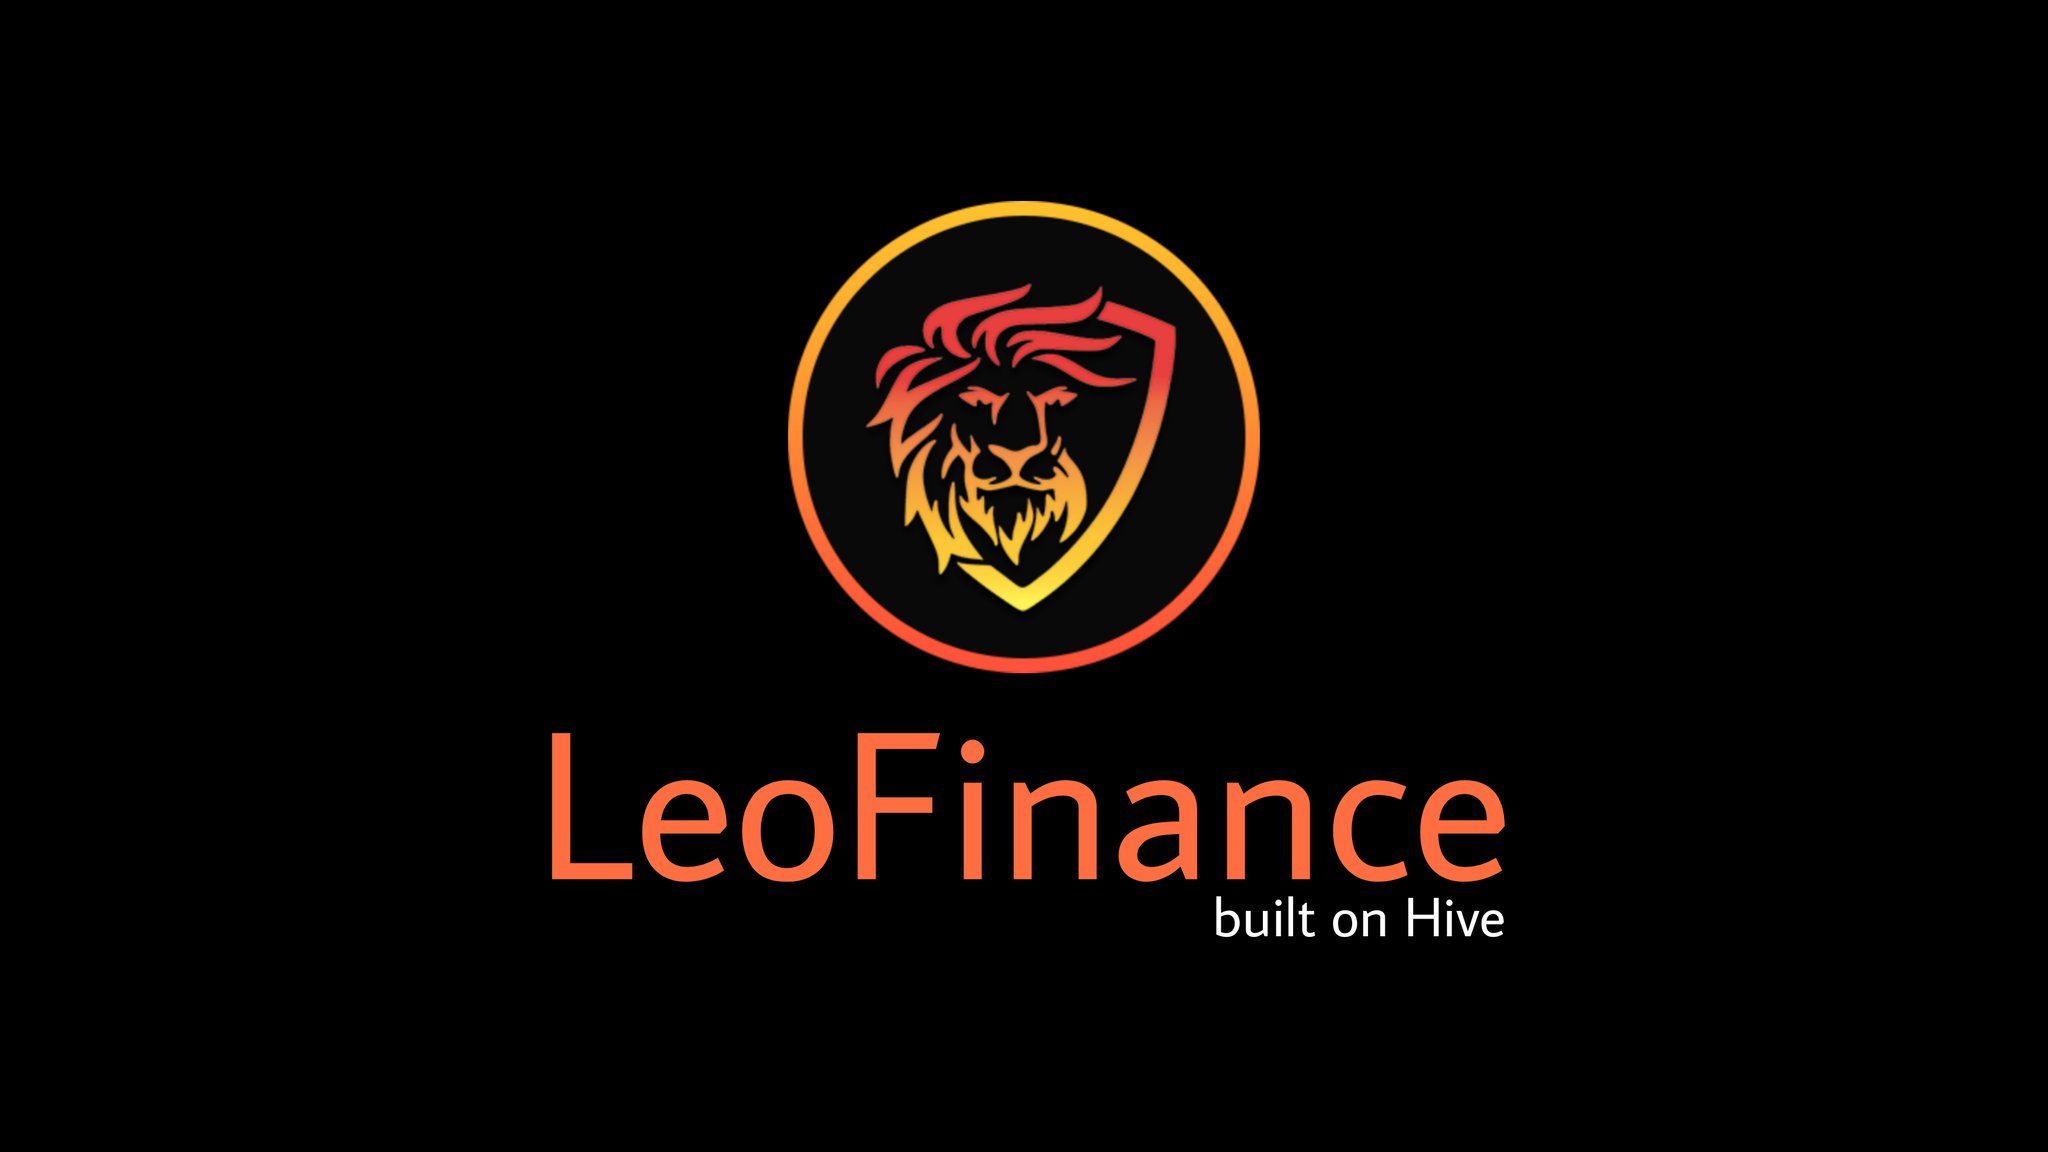 LeoFinance, built on Hive banner.